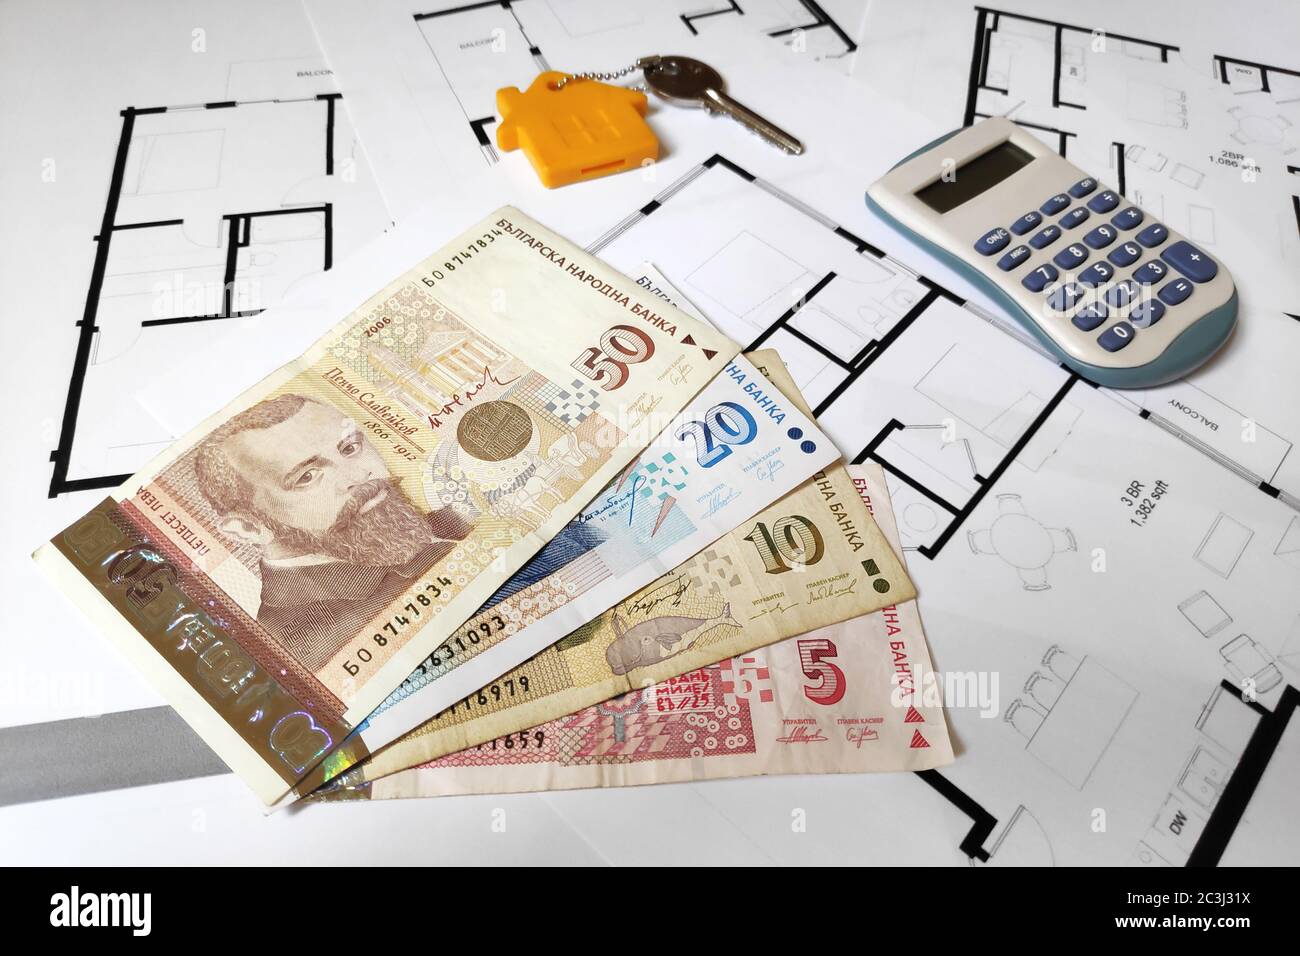 Primo piano su alcune banconote bulgaro lev, una chiave di casa e un calcolatore in cima alla pianificazione degli edifici. Foto Stock